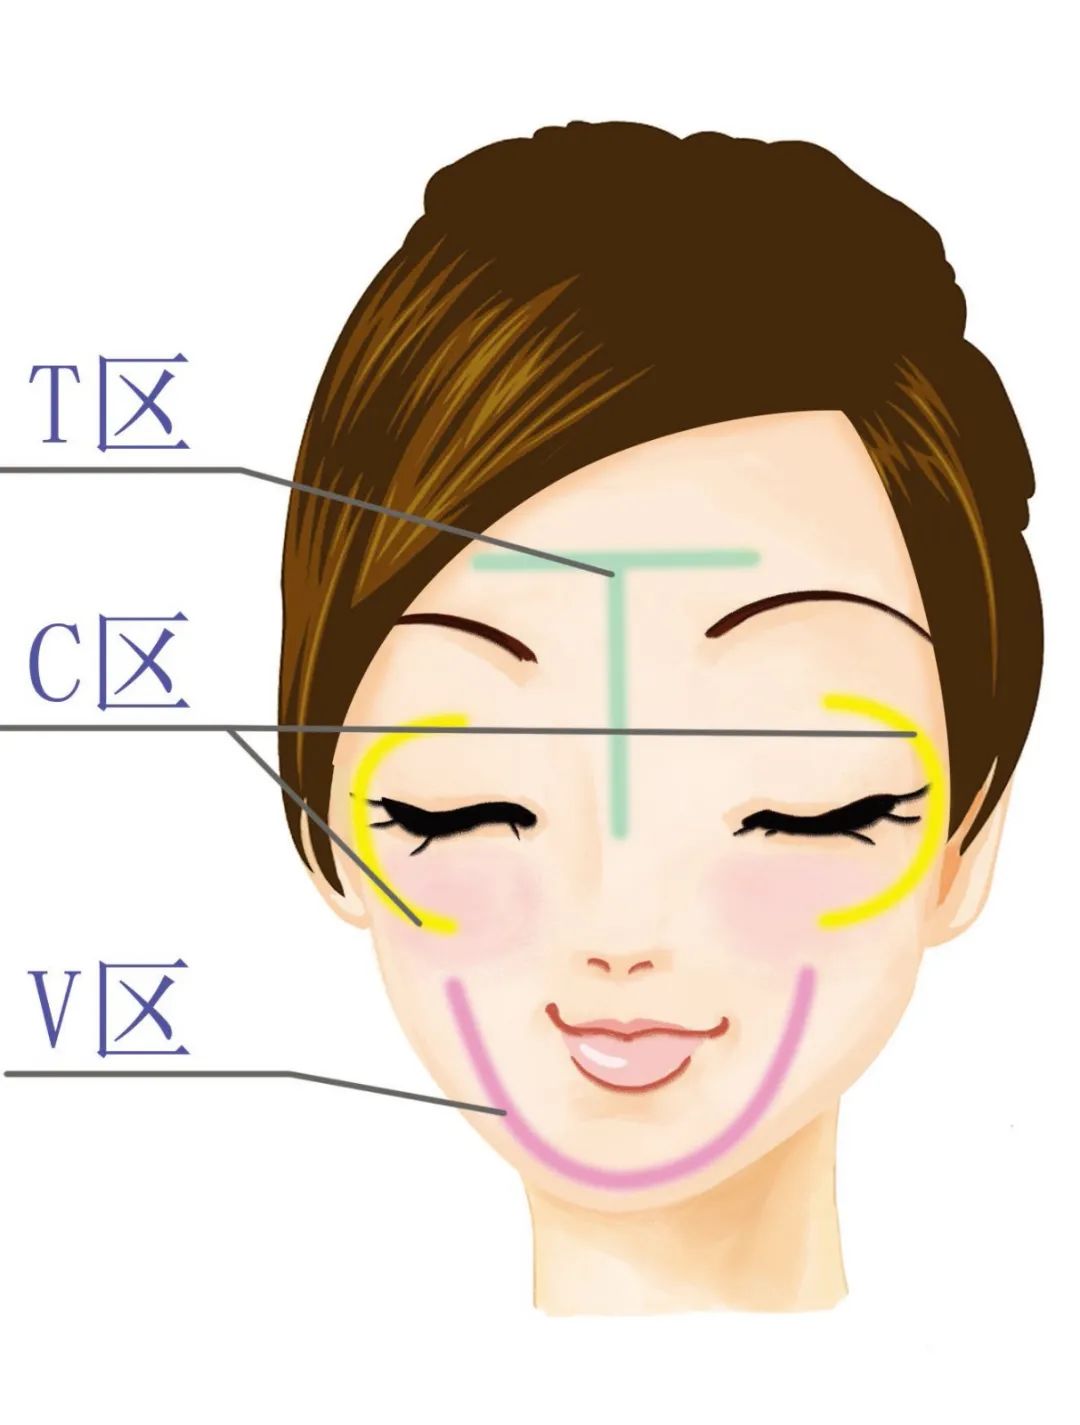 在我们的脸部有不同的分区,额头和鼻子部分称为t区,从眉尾处到太阳穴